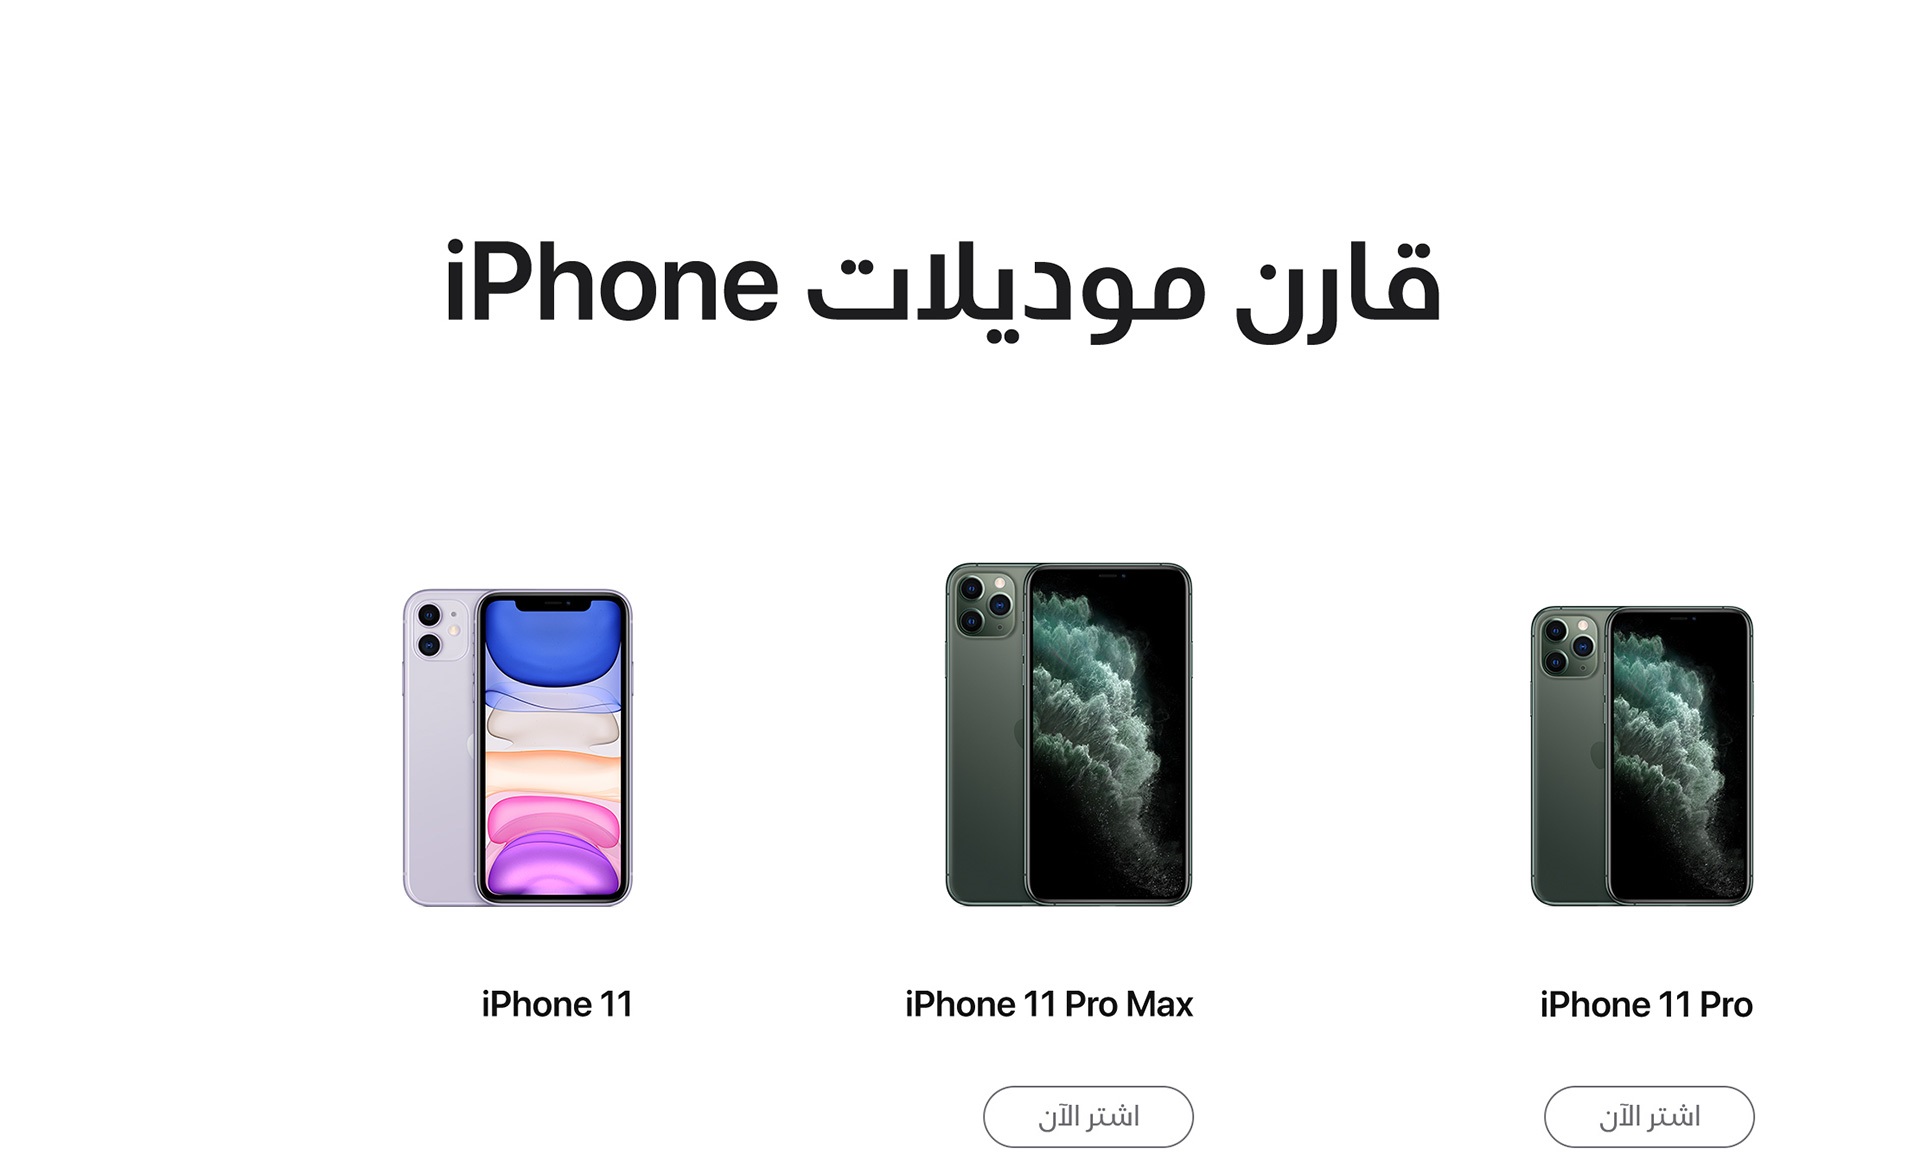 apple-iphone11pro-max-price-uae-etisalat-comparison-ar-1